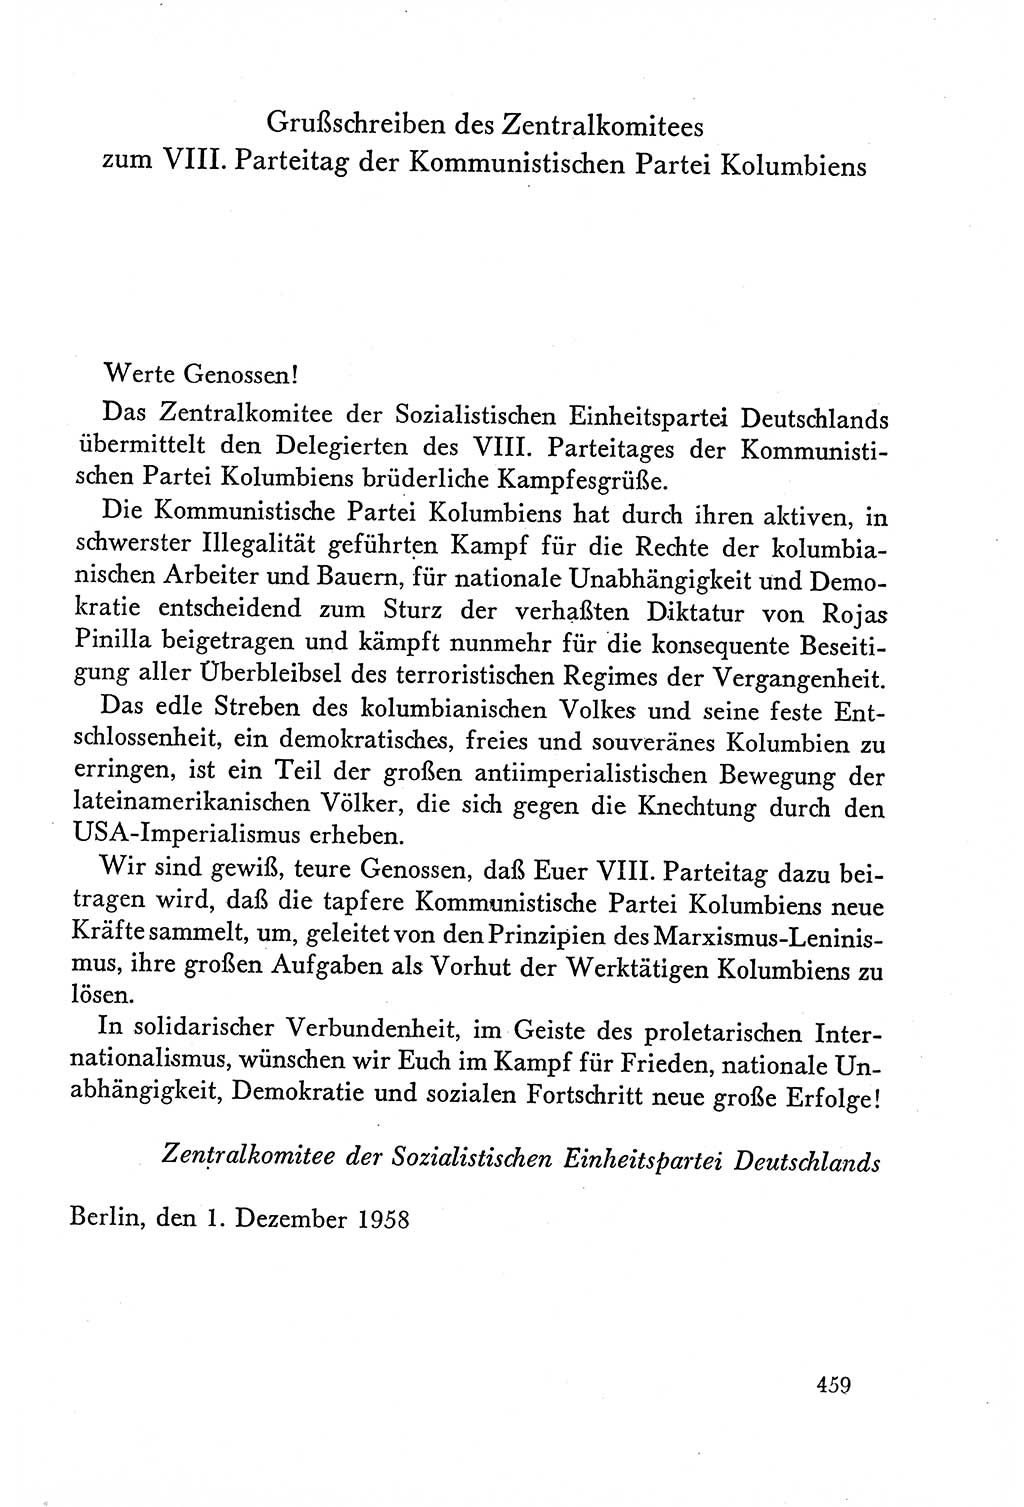 Dokumente der Sozialistischen Einheitspartei Deutschlands (SED) [Deutsche Demokratische Republik (DDR)] 1958-1959, Seite 459 (Dok. SED DDR 1958-1959, S. 459)